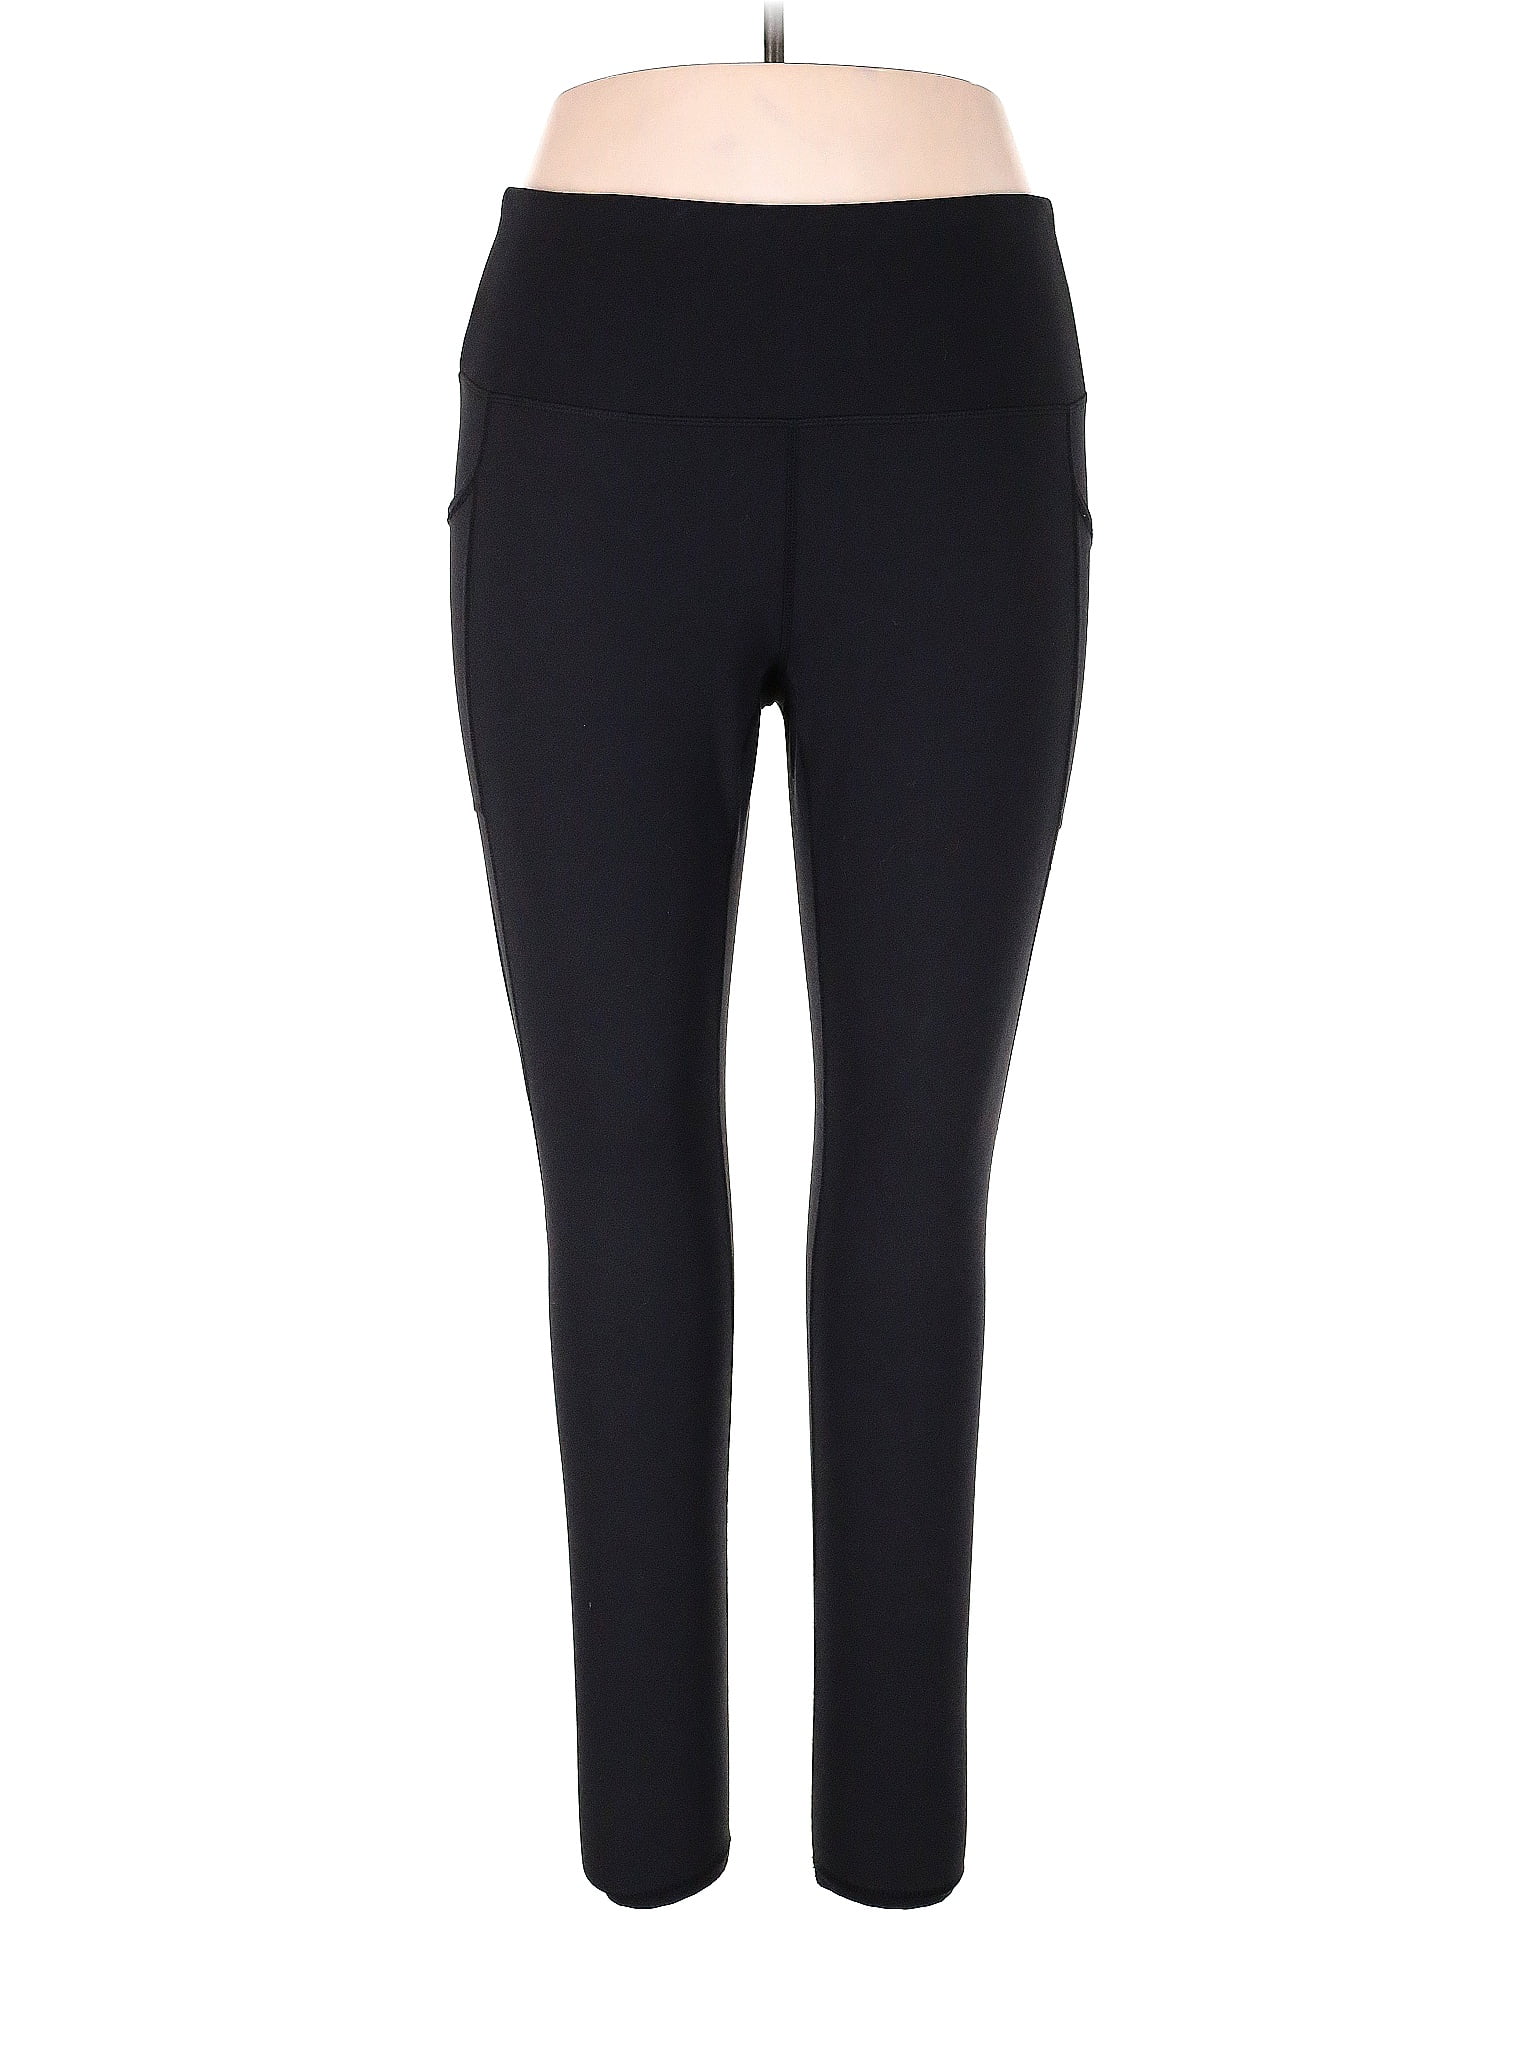 RBX Black Active Pants Size 1X (Plus) - 64% off